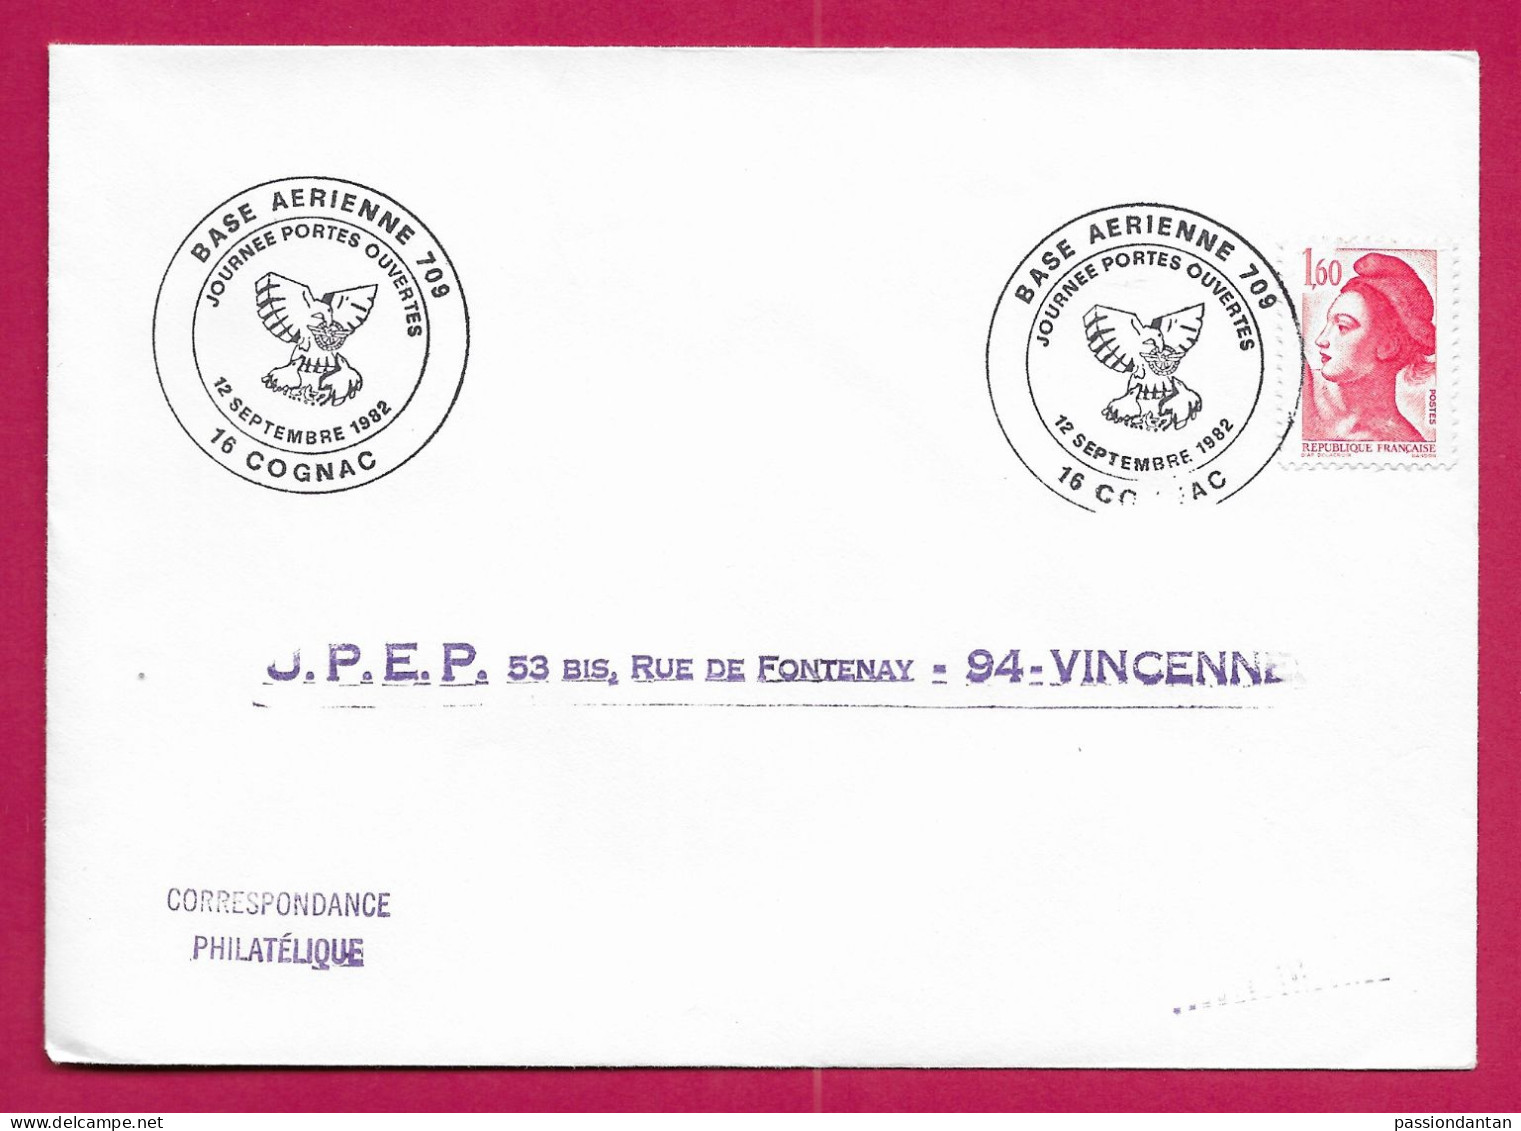 Enveloppe Datée Du 12 Septembre 1982 - Expédiée De La Base Aérienne 709 à Cognac En Charente - Militaire Luchtpost